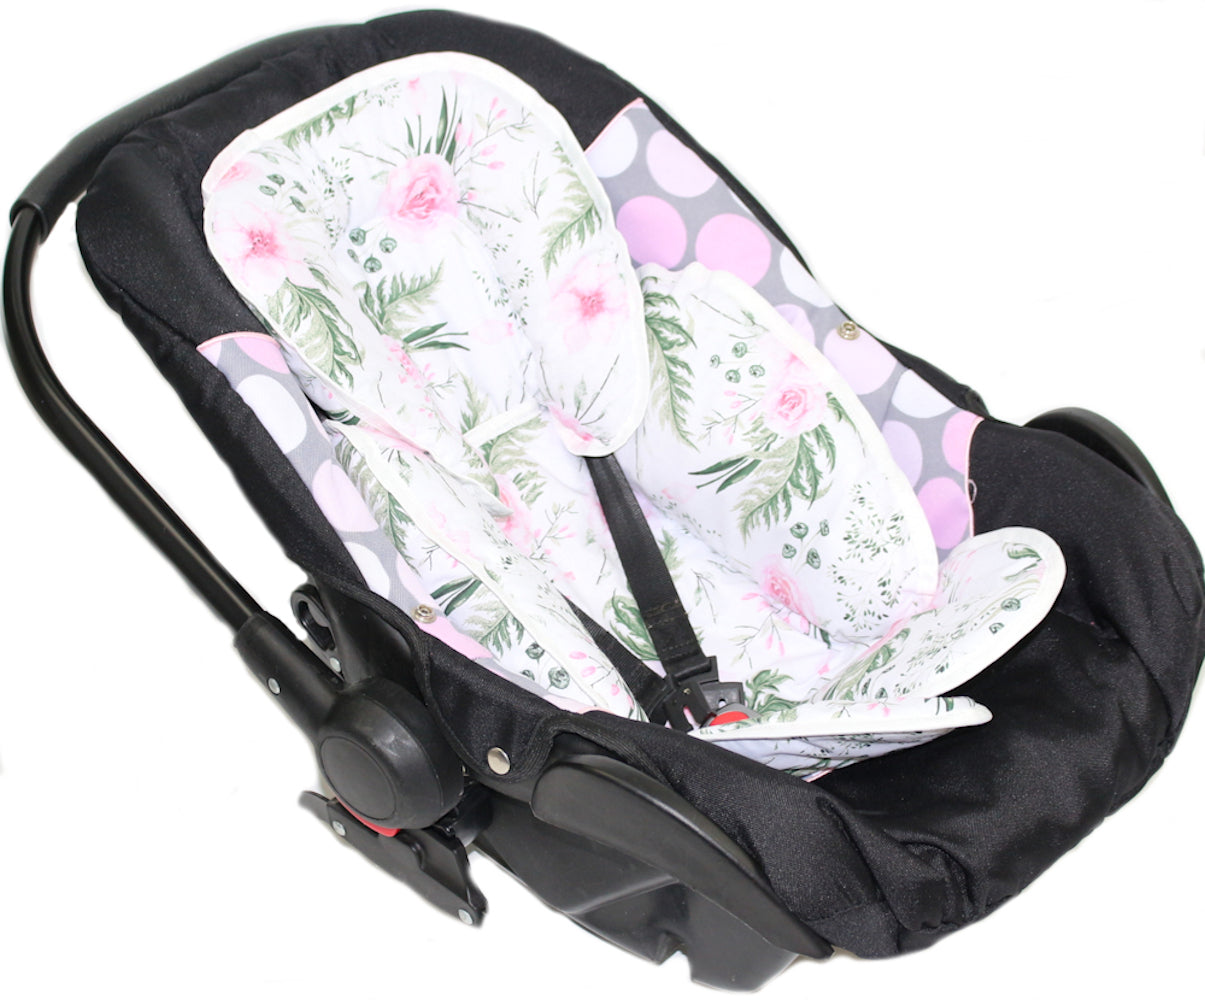 Sitzverkleinerer Baumwolle - Flowers -  für Auto Kindersitz Babyschale